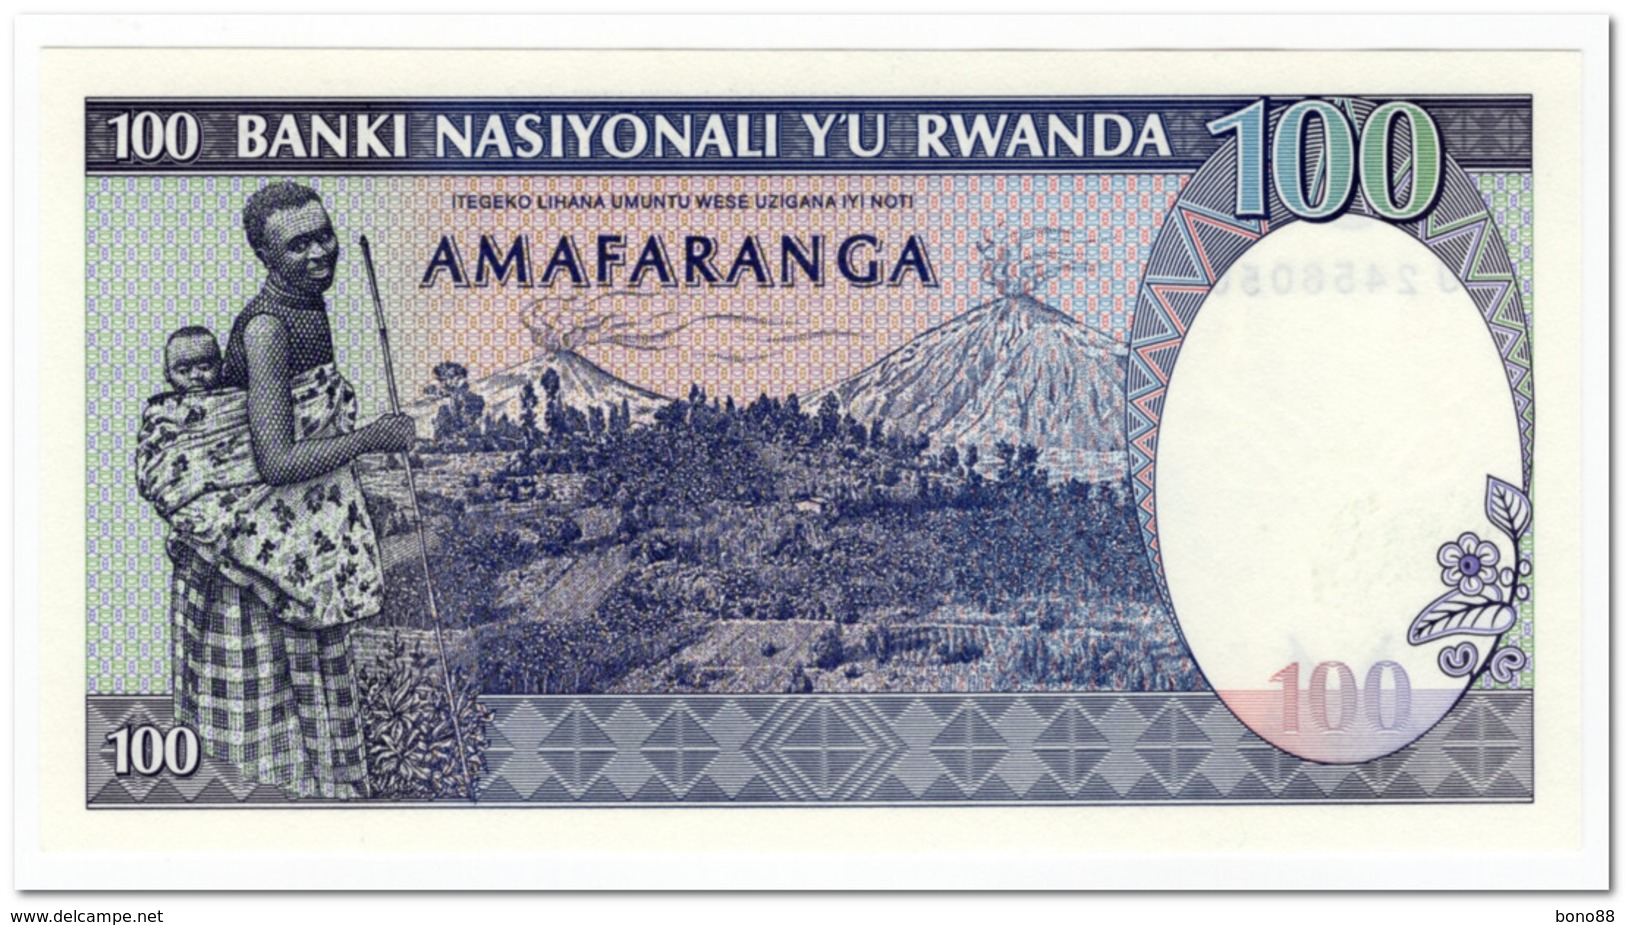 RWANDA,100 FRANCS,1989,P.19,UNC - Rwanda